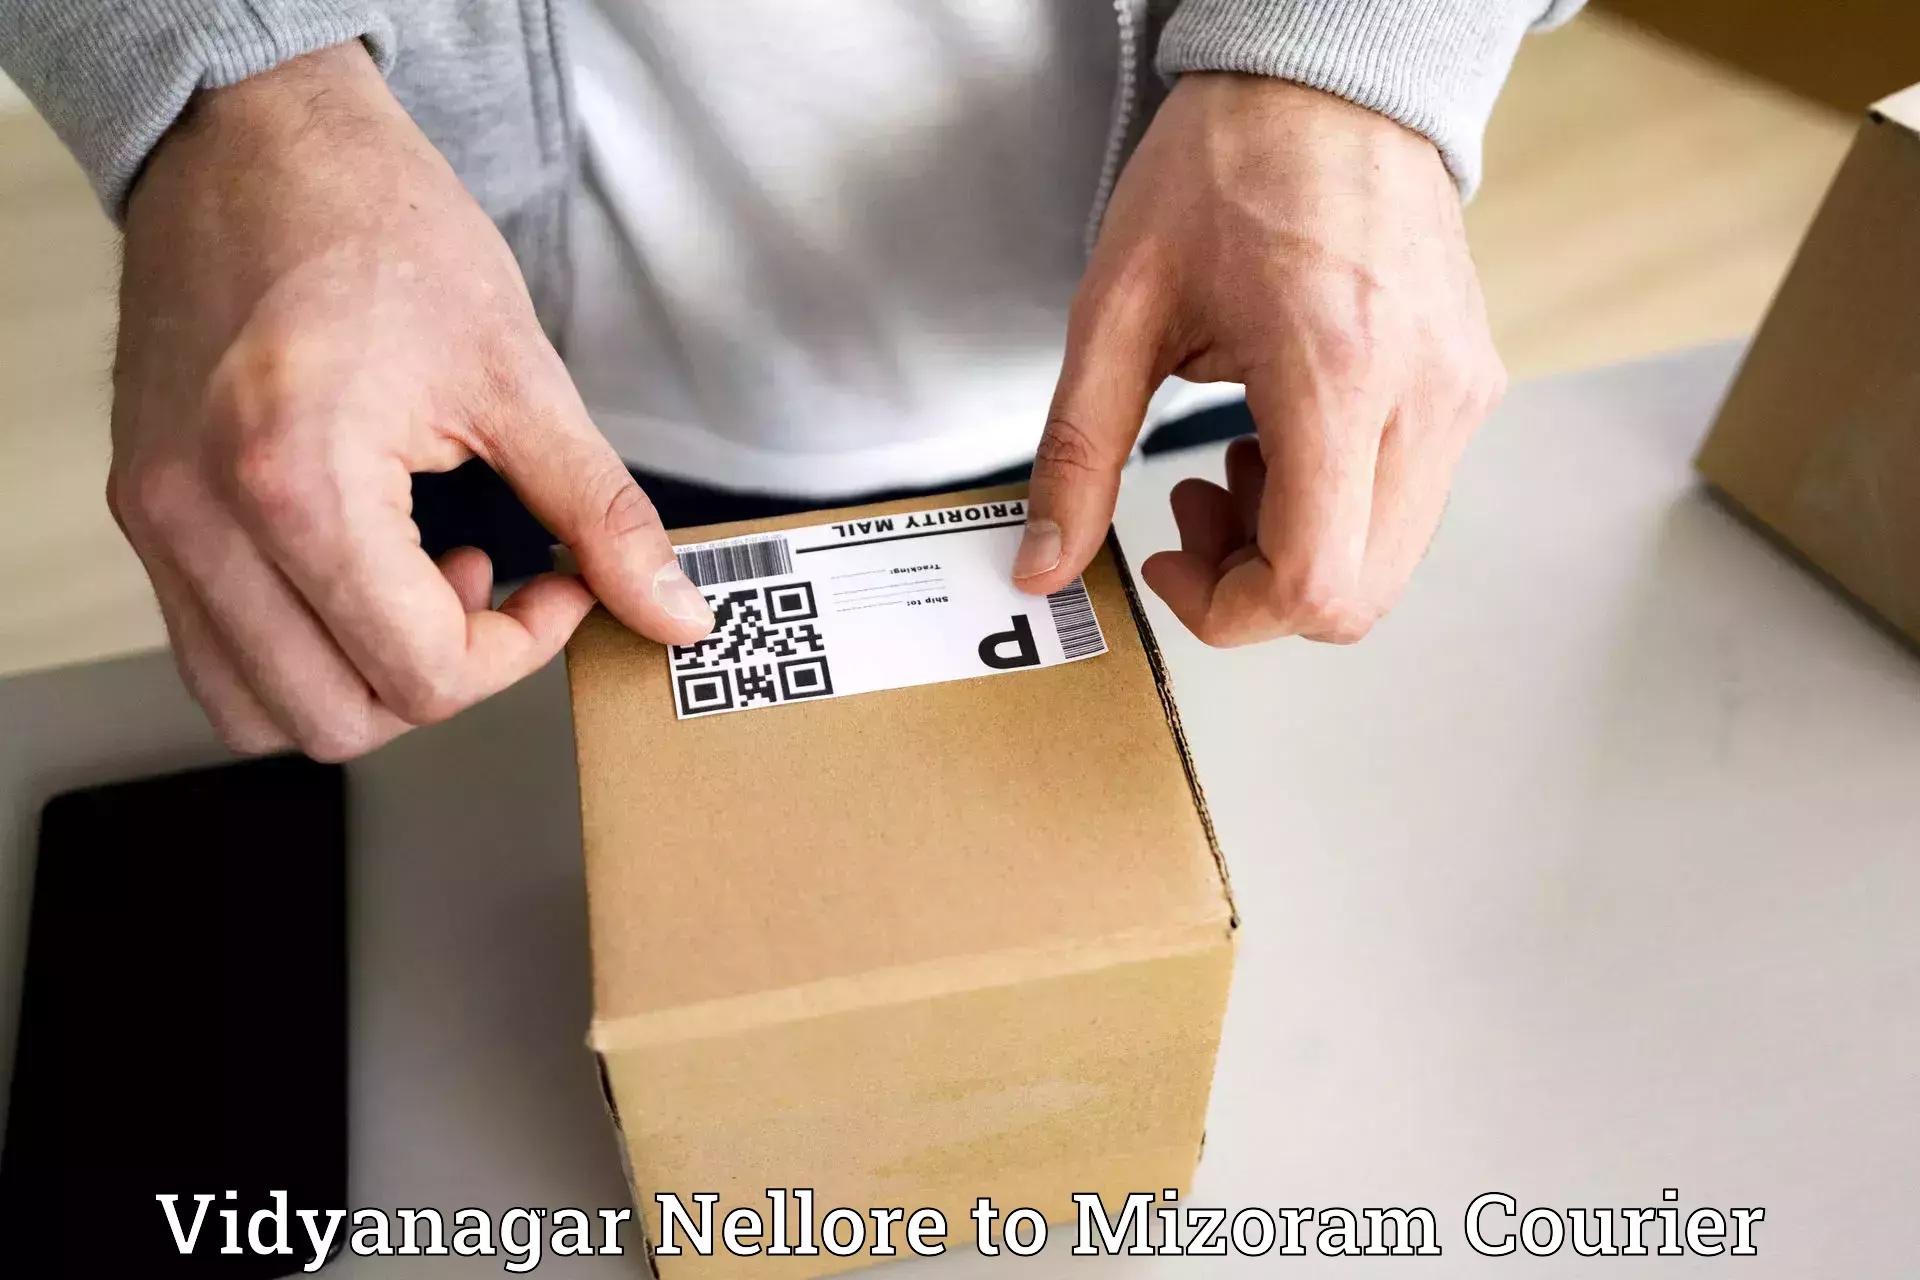 Efficient parcel transport in Vidyanagar Nellore to Aizawl